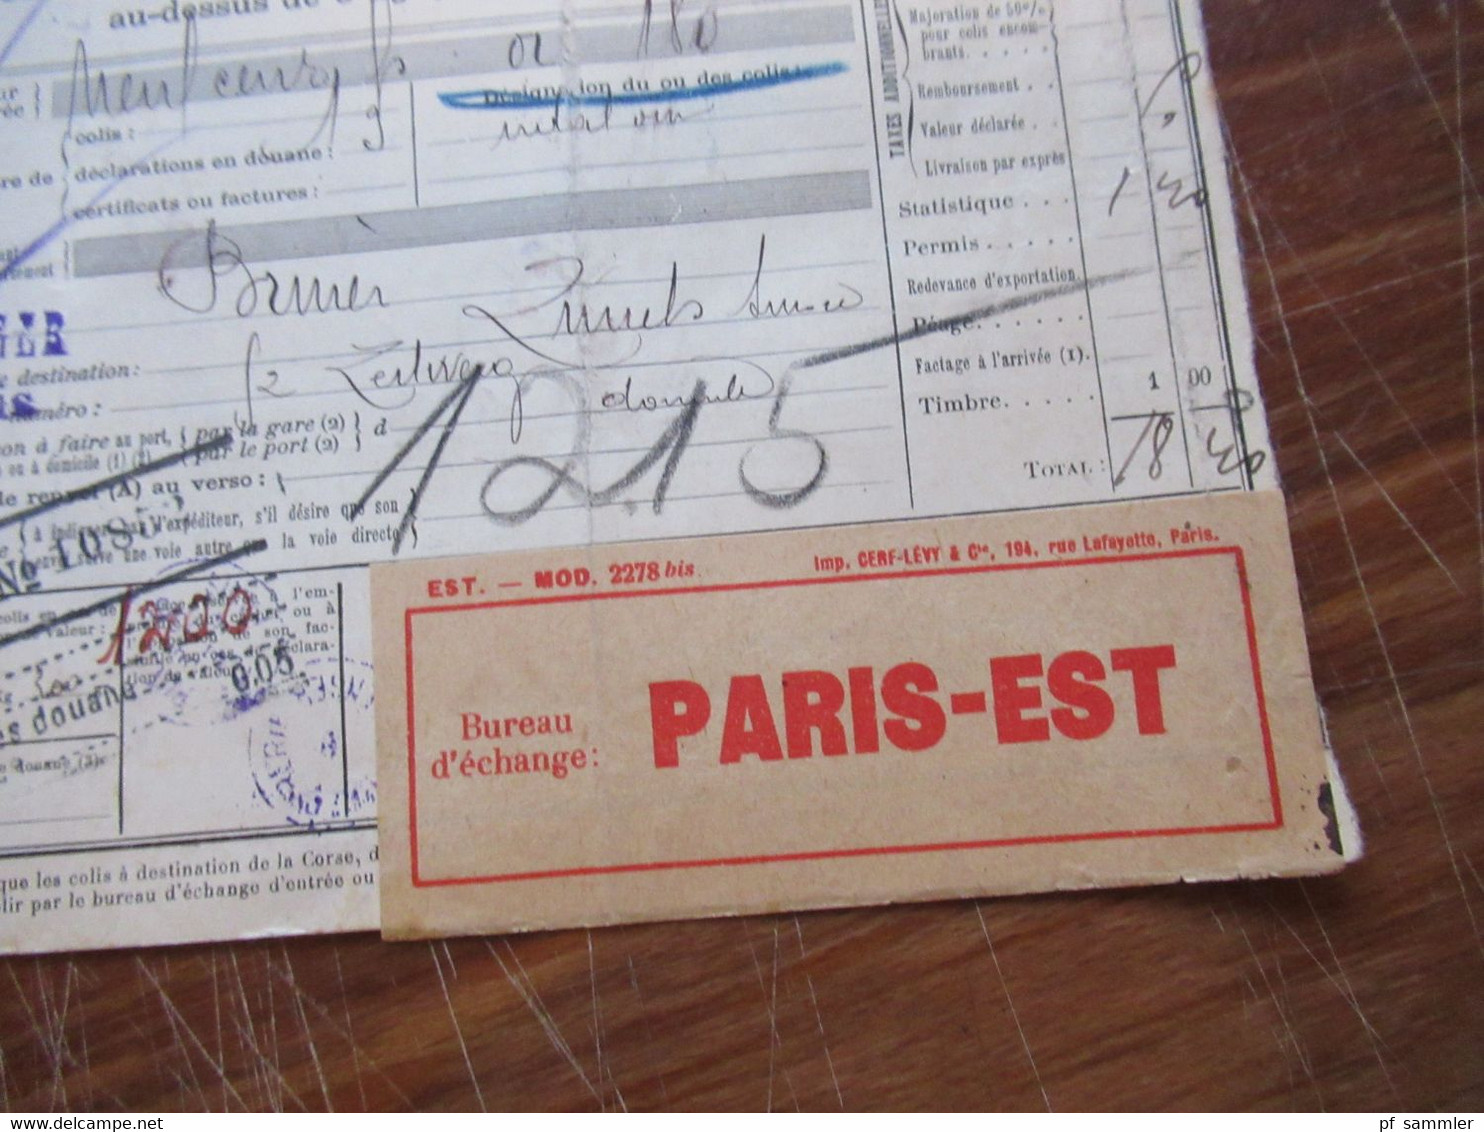 Frankreich 1927 Auslandspaketkarte Colis Postaux In Die Schweiz Valeur Declaree / Paris - Est Mit Vielen Stempeln!! - Brieven En Documenten